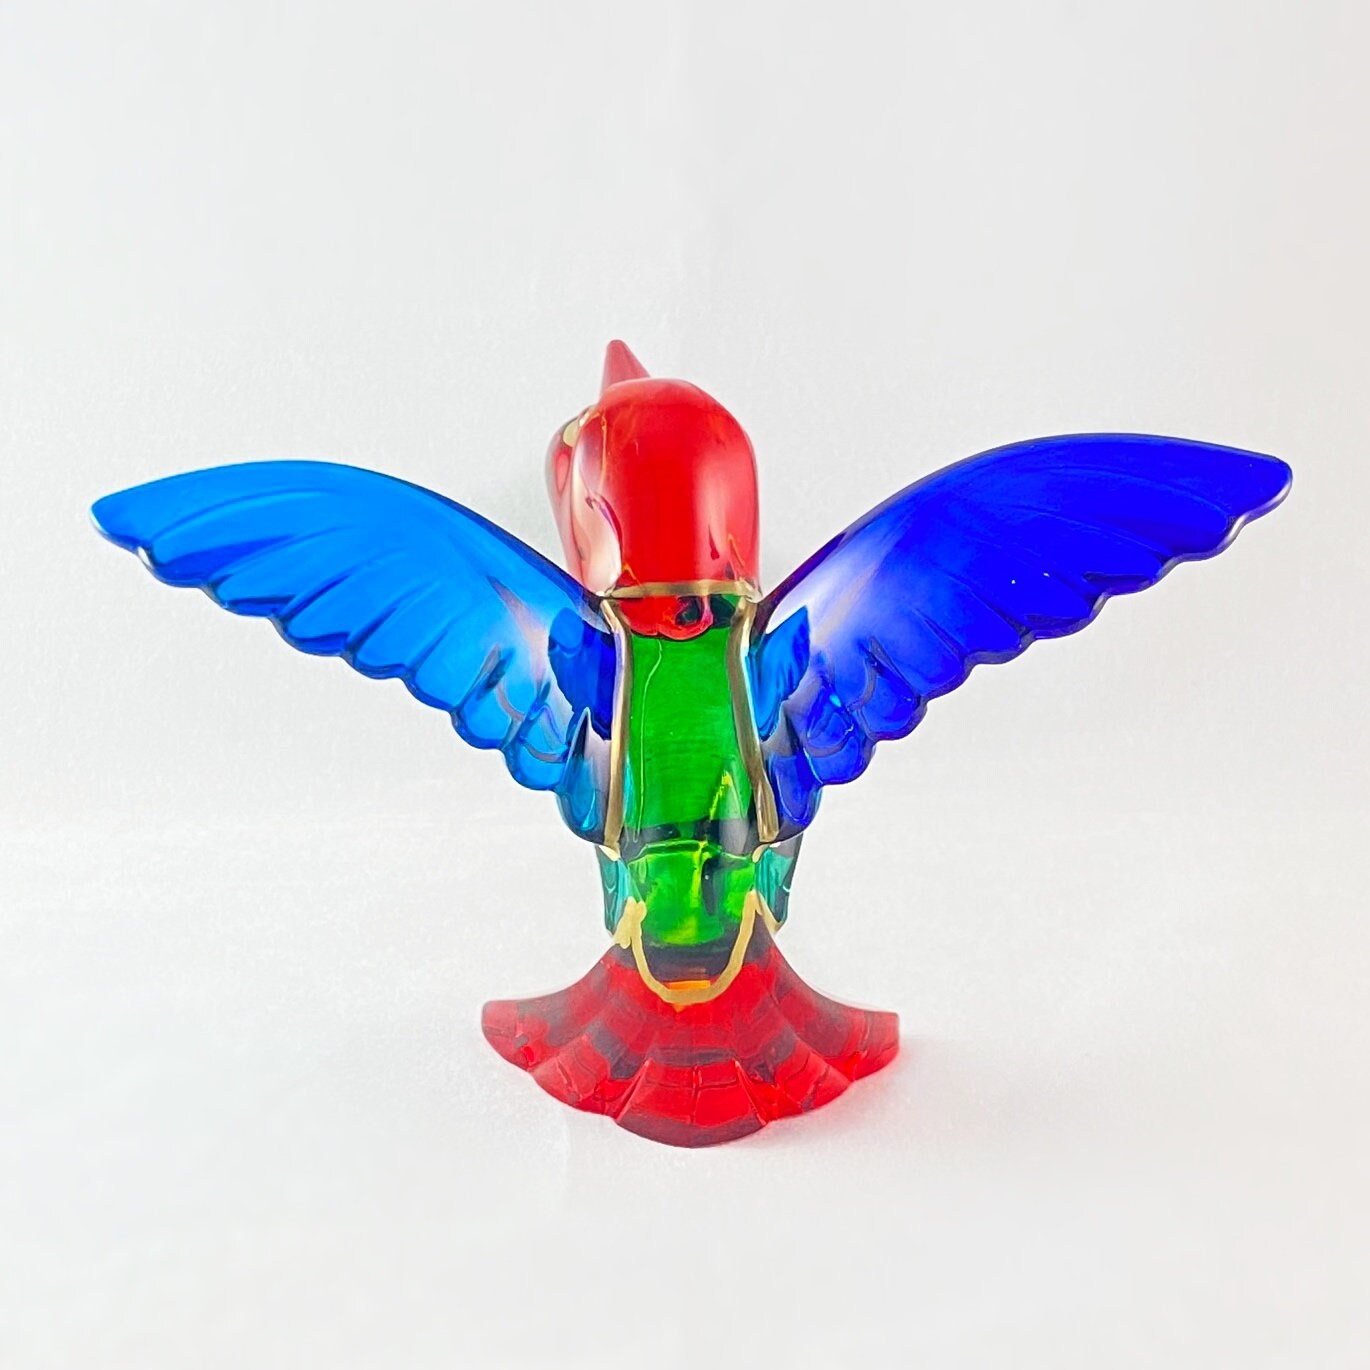 Venetian Glass Hummingbird - Handmade in Italy, Colorful Murano Glass